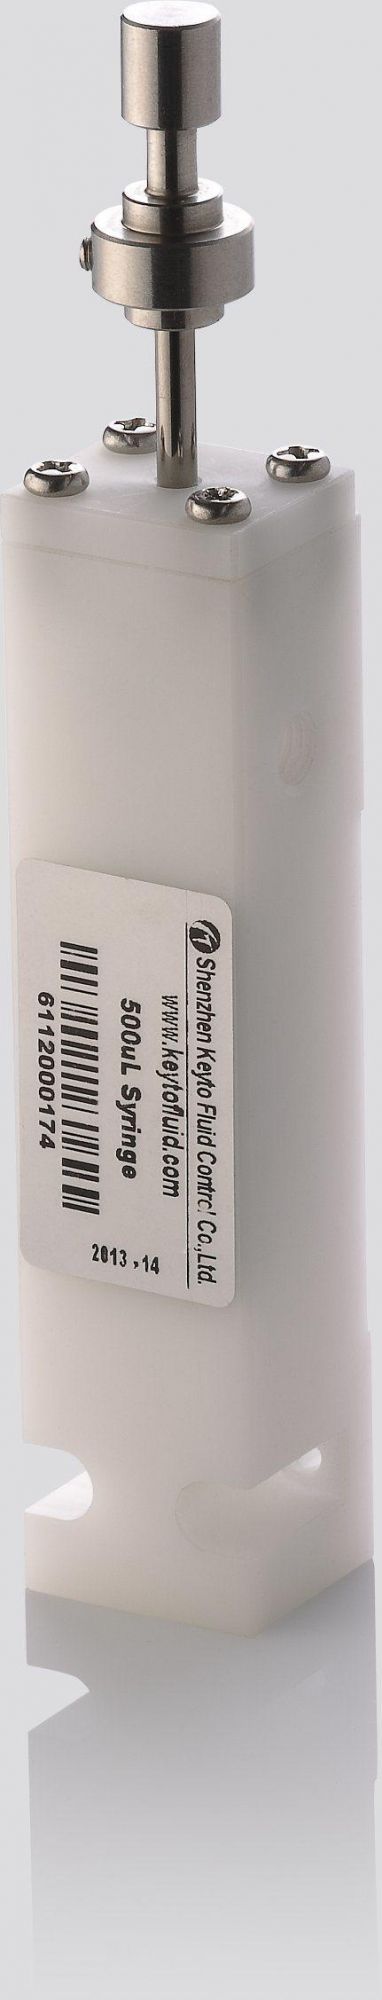 50UL Precision Sampling Syringe Usage for Medical/Laboratory Instruments